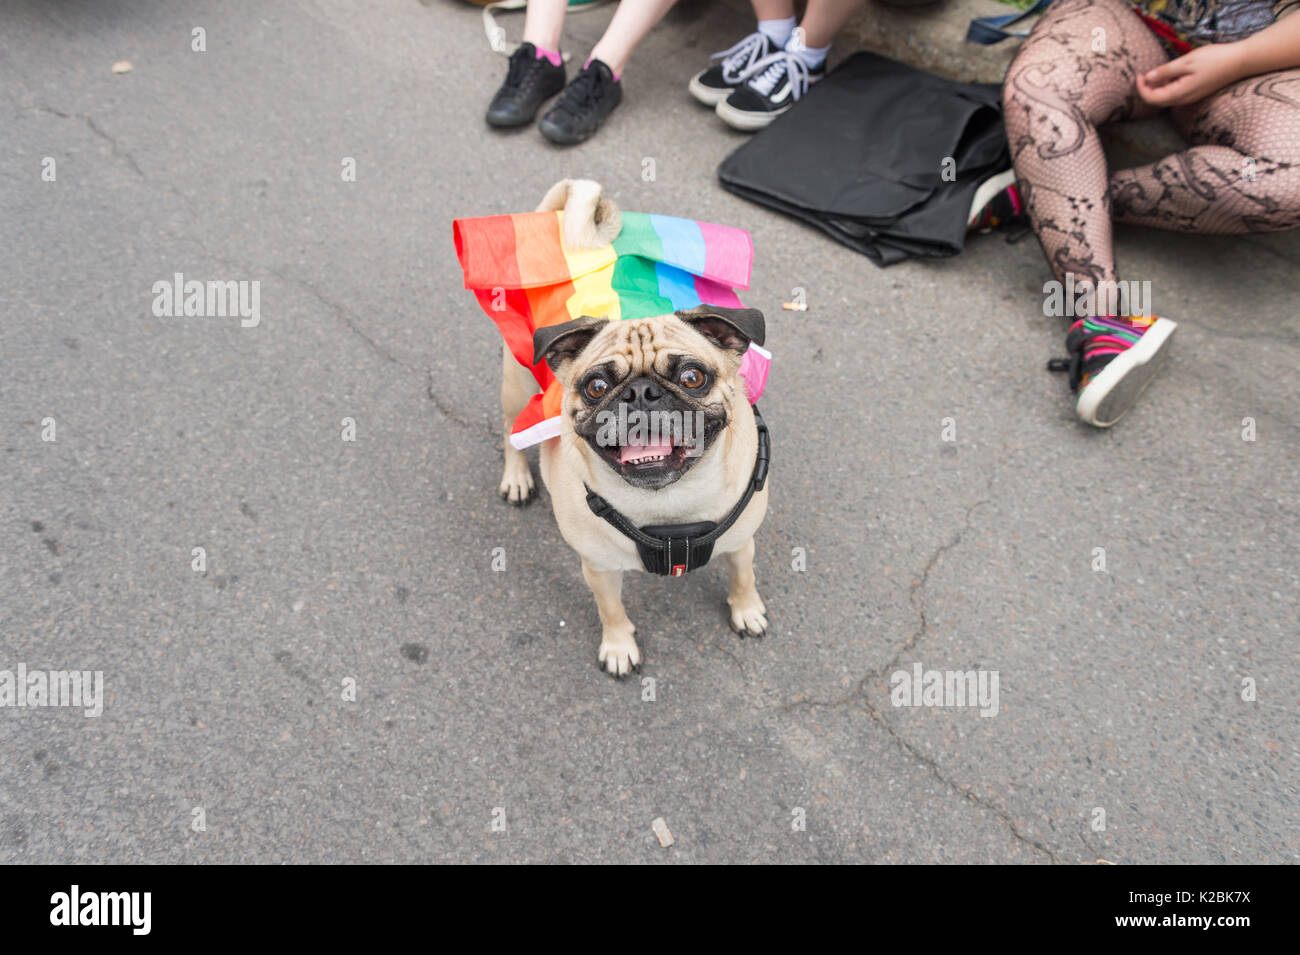 Montréal, le 20 août 2017 : Carlin chien avec un drapeau arc-en-ciel gay sur son dos à la parade de la fierté de Montréal Banque D'Images